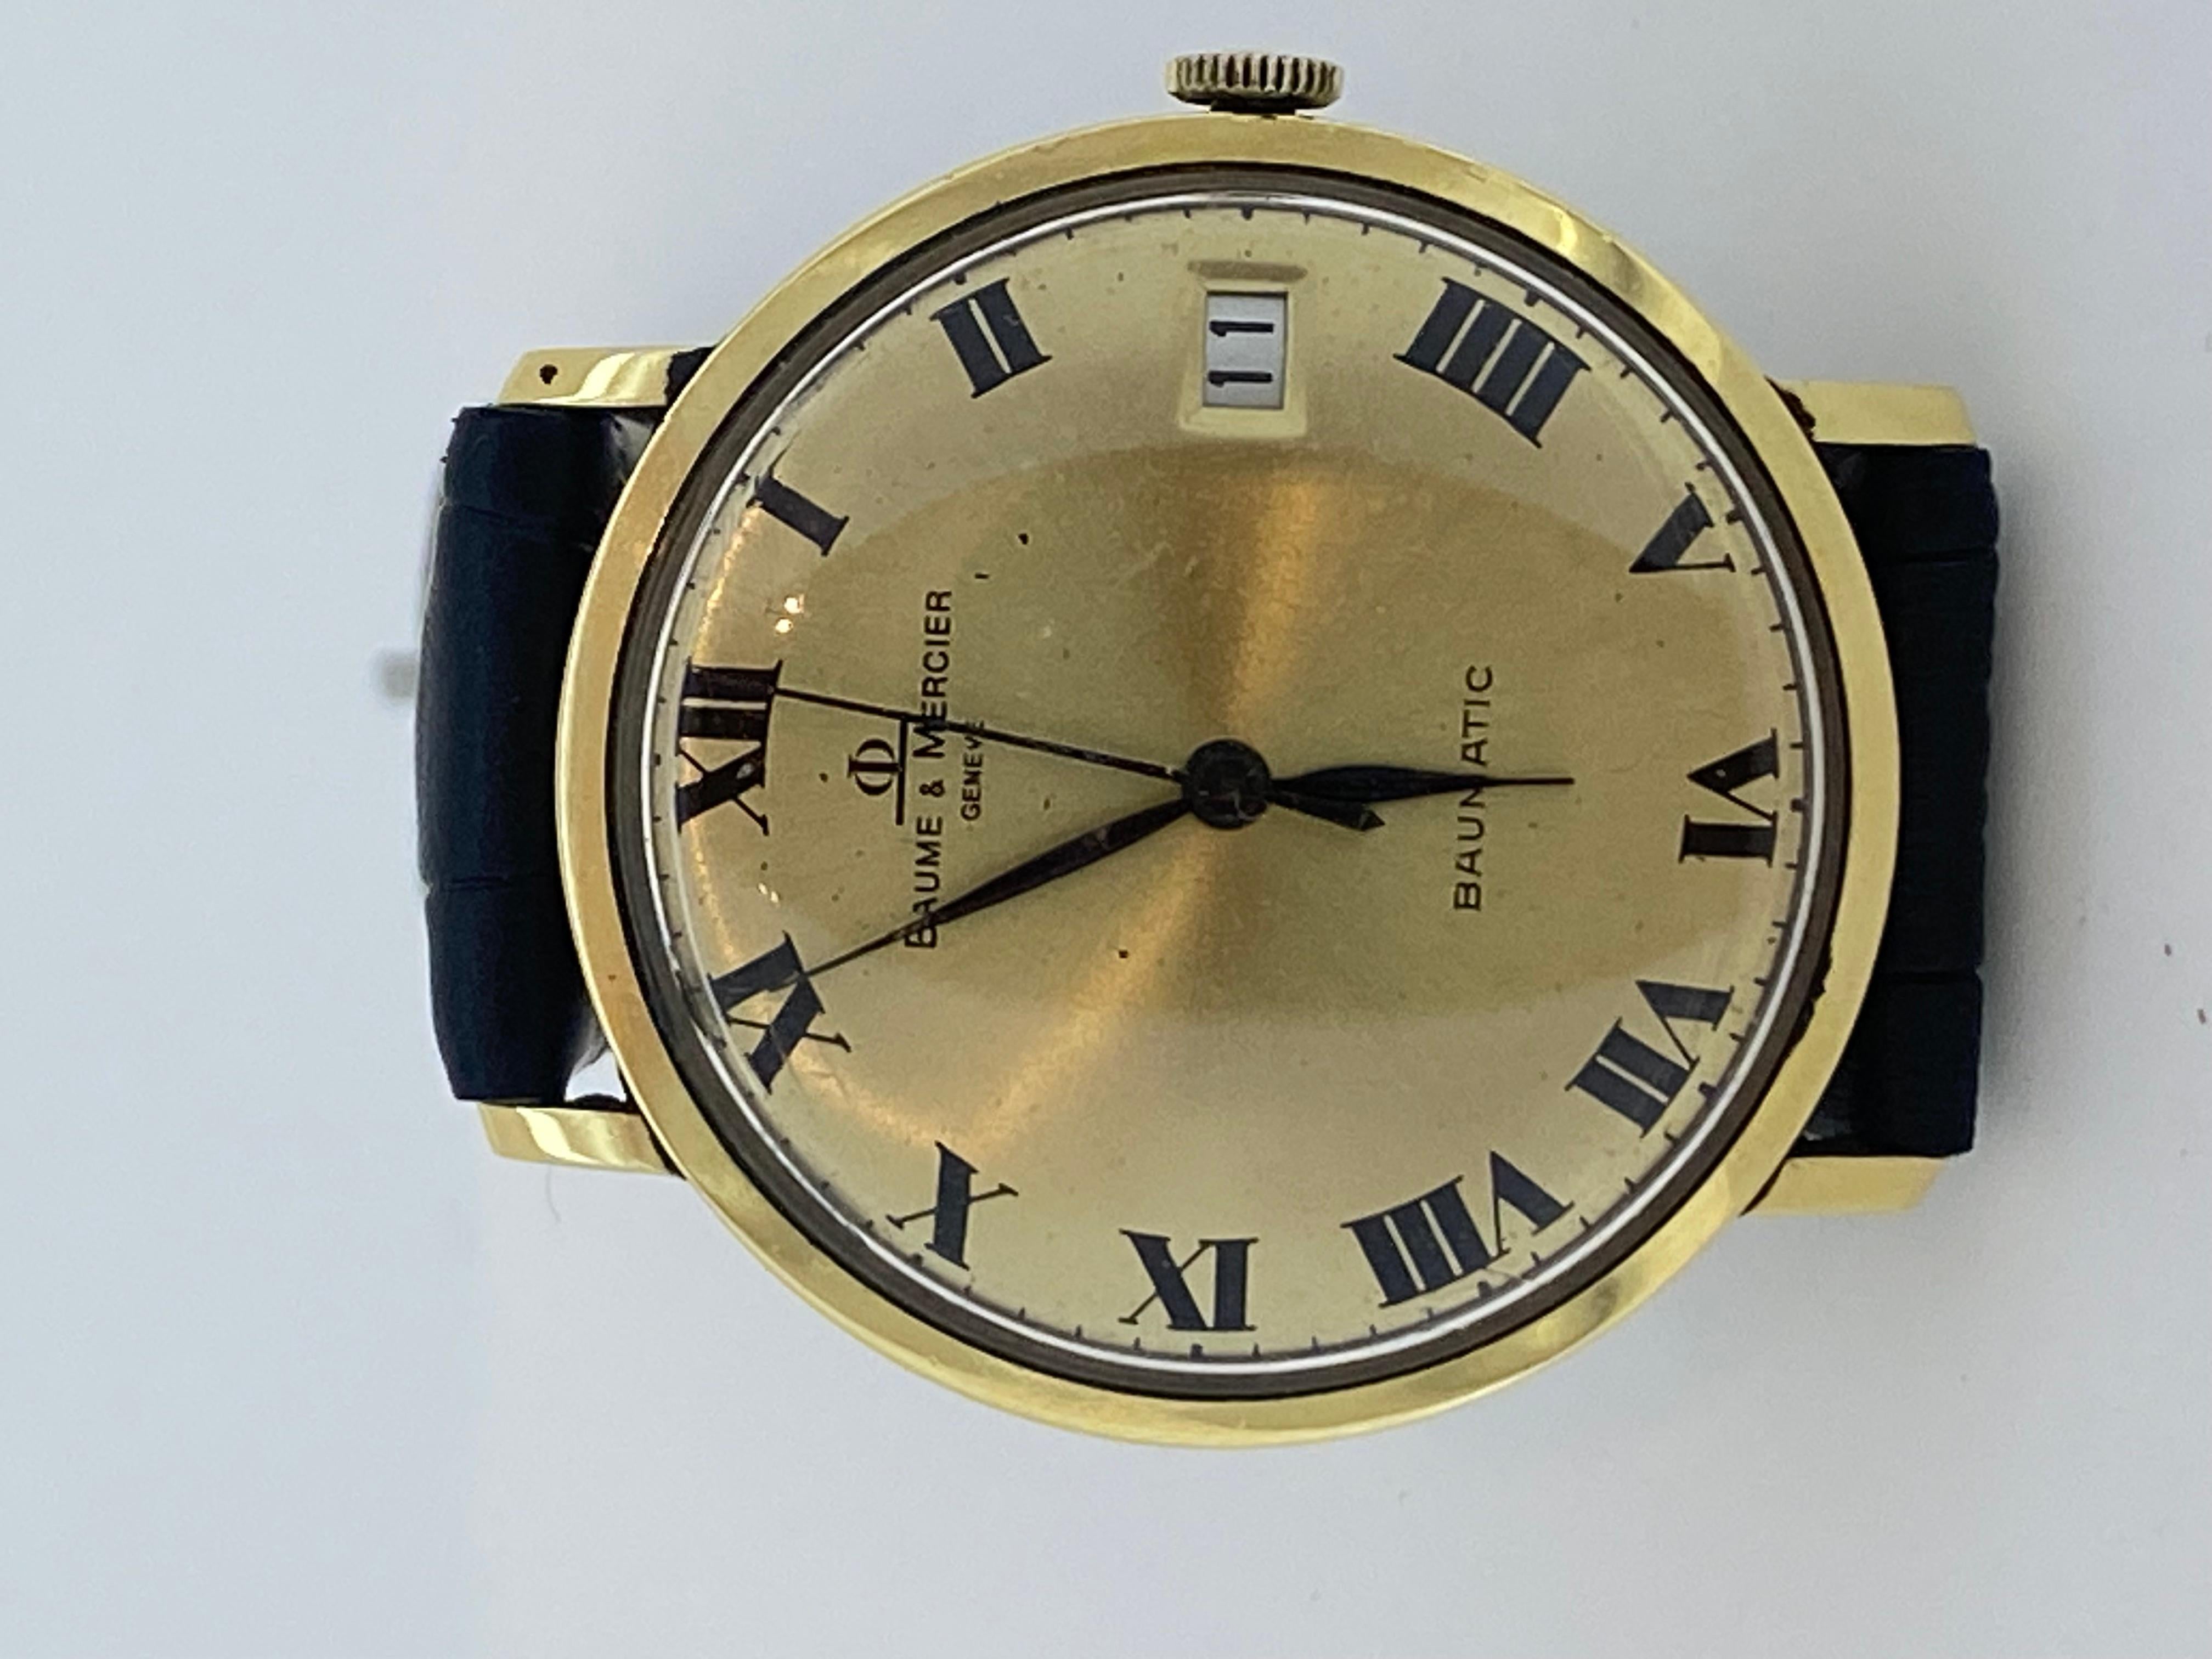 Ausgeführt in 18K Massivgold, 

dieser raffinierte Zeitmesser 

der Schweizer Luxusuhrenmarke Baume & Mercier 

geht auf die 1970er Jahre zurück, 

dennoch ist es in schönem Zustand und in ausgezeichneter Funktionstüchtigkeit

 

Es ist sehr selten,